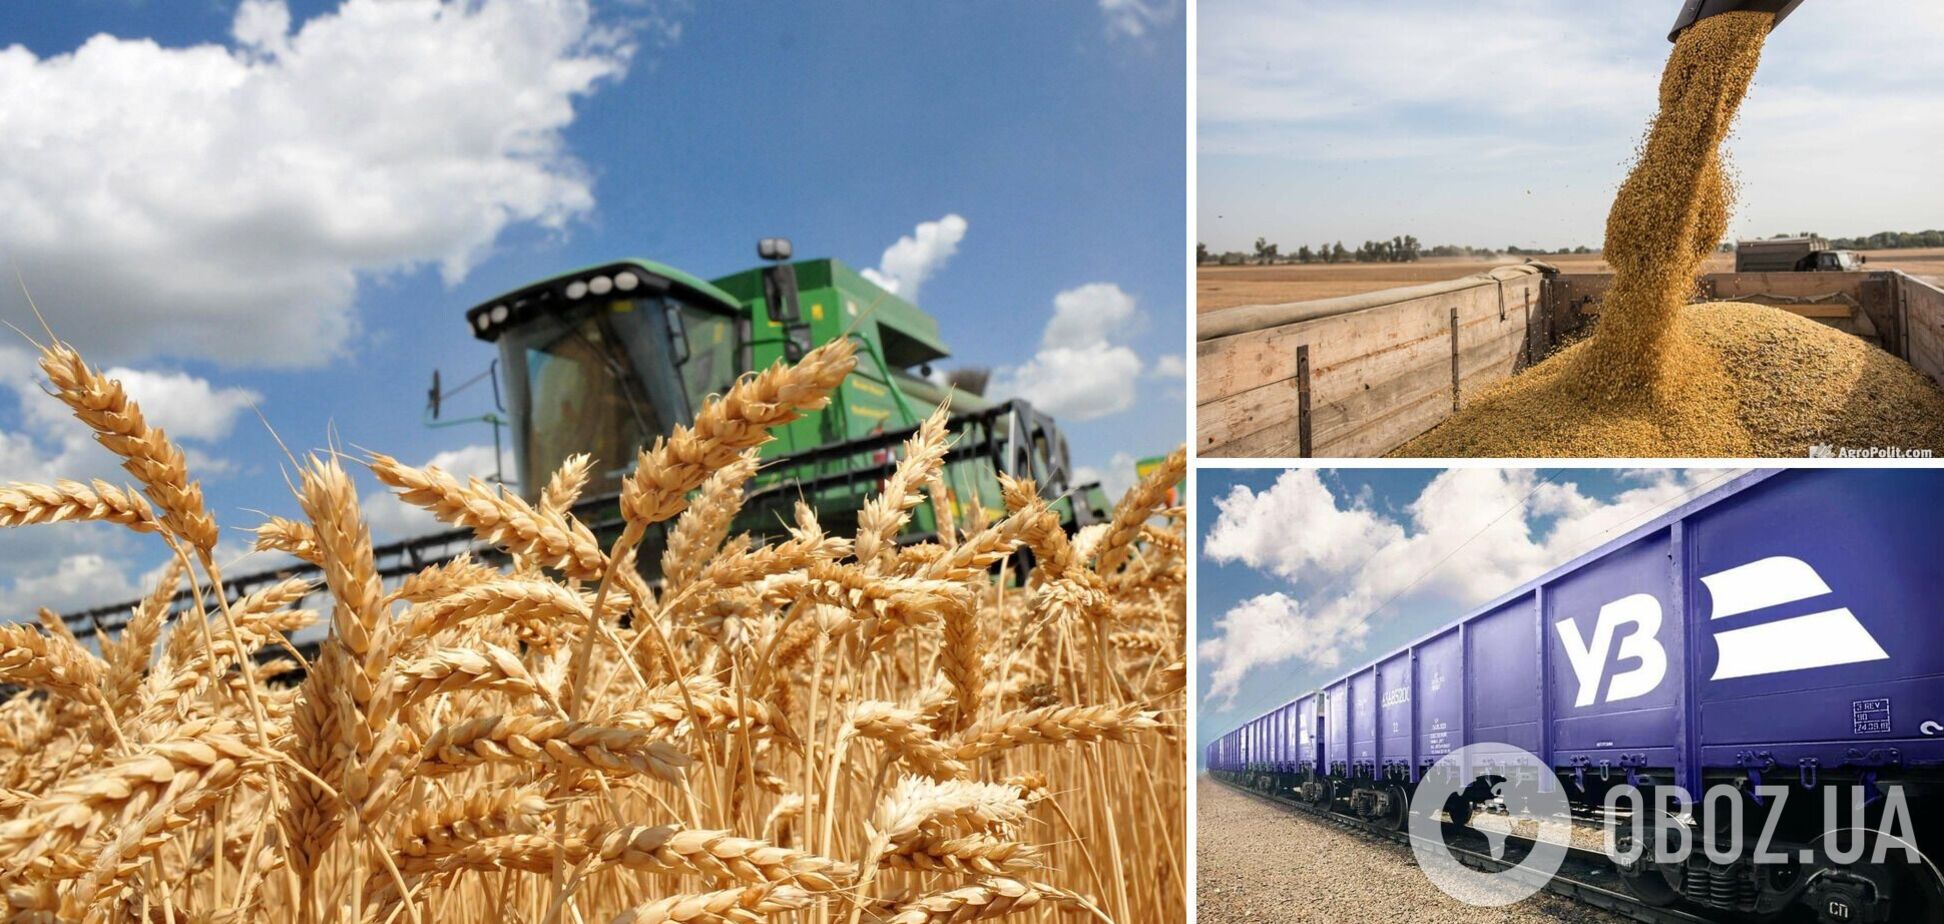 Повышение тарифов на железнодорожные грузовые перевозки уничтожает украинских аграриев – президент УЗА